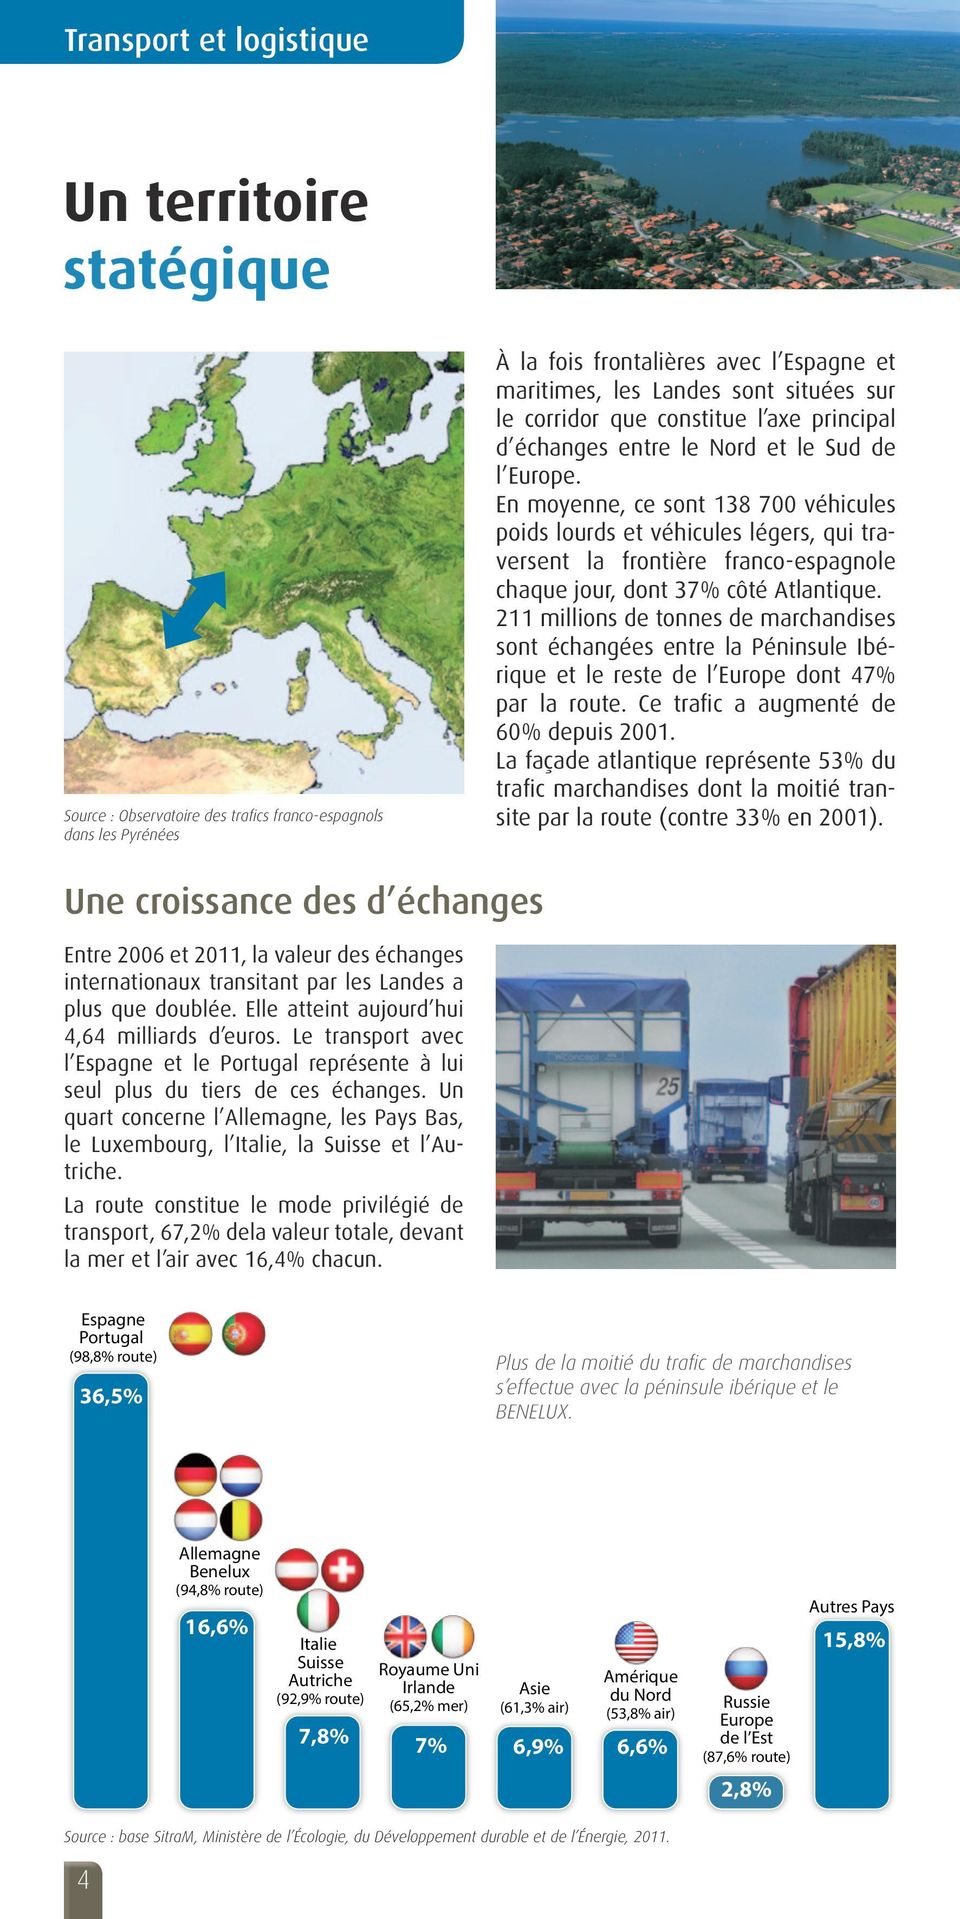 En moyenne, ce sont 138 700 véhicules poids lourds et véhicules légers, qui traversent la frontière franco-espagnole chaque jour, dont 37% côté Atlantique.